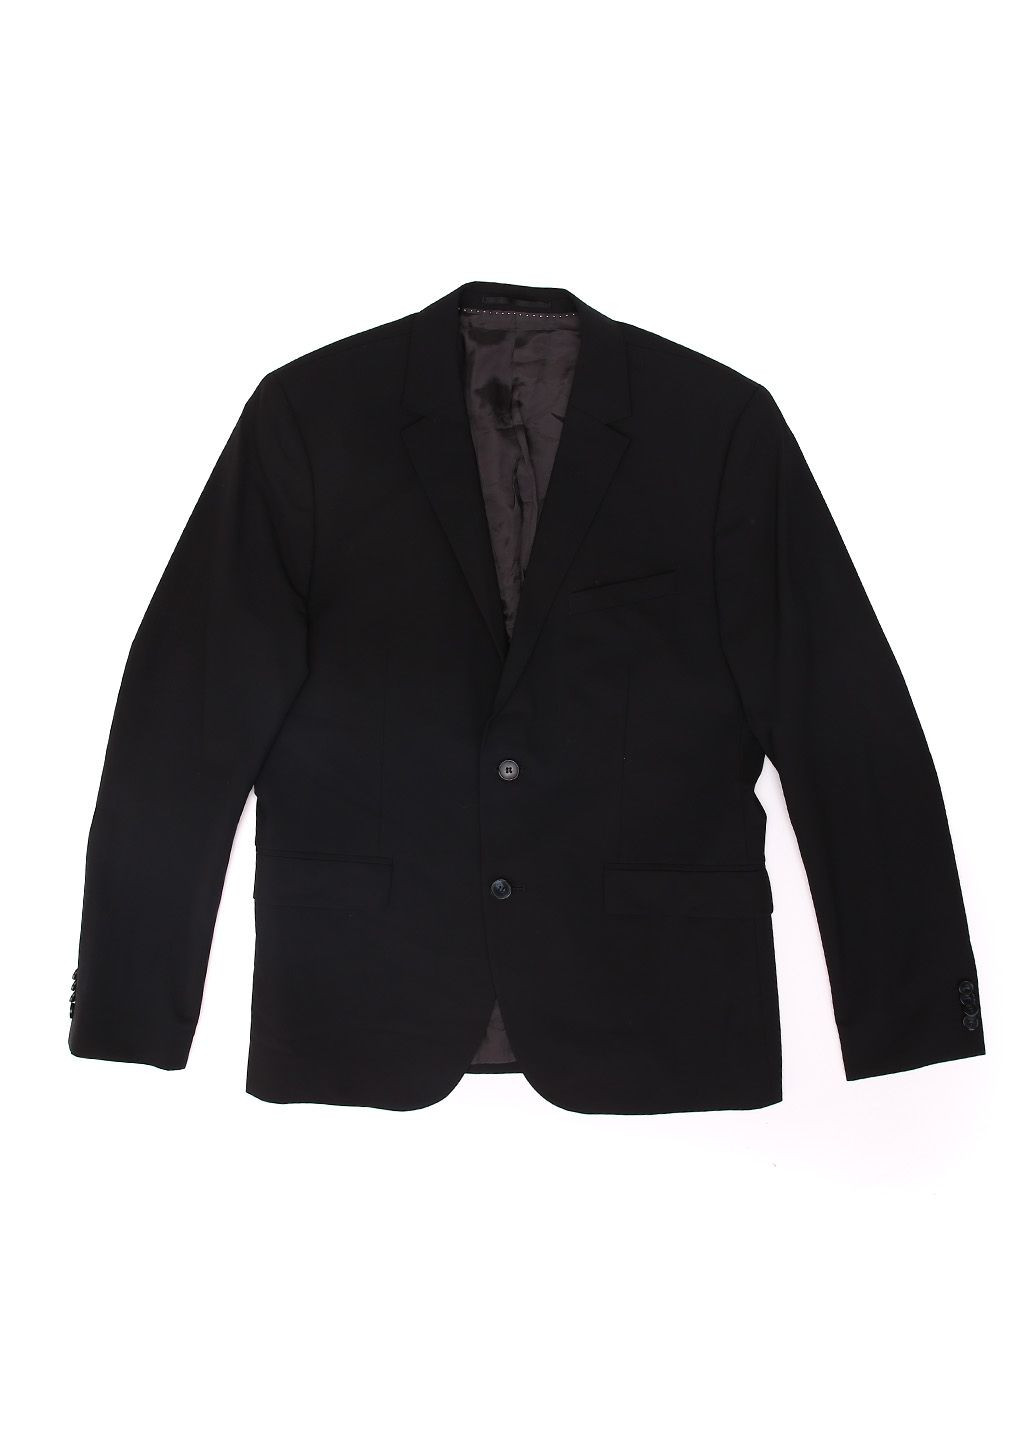 Пиджак H&M однотонный чёрный деловой шерсть